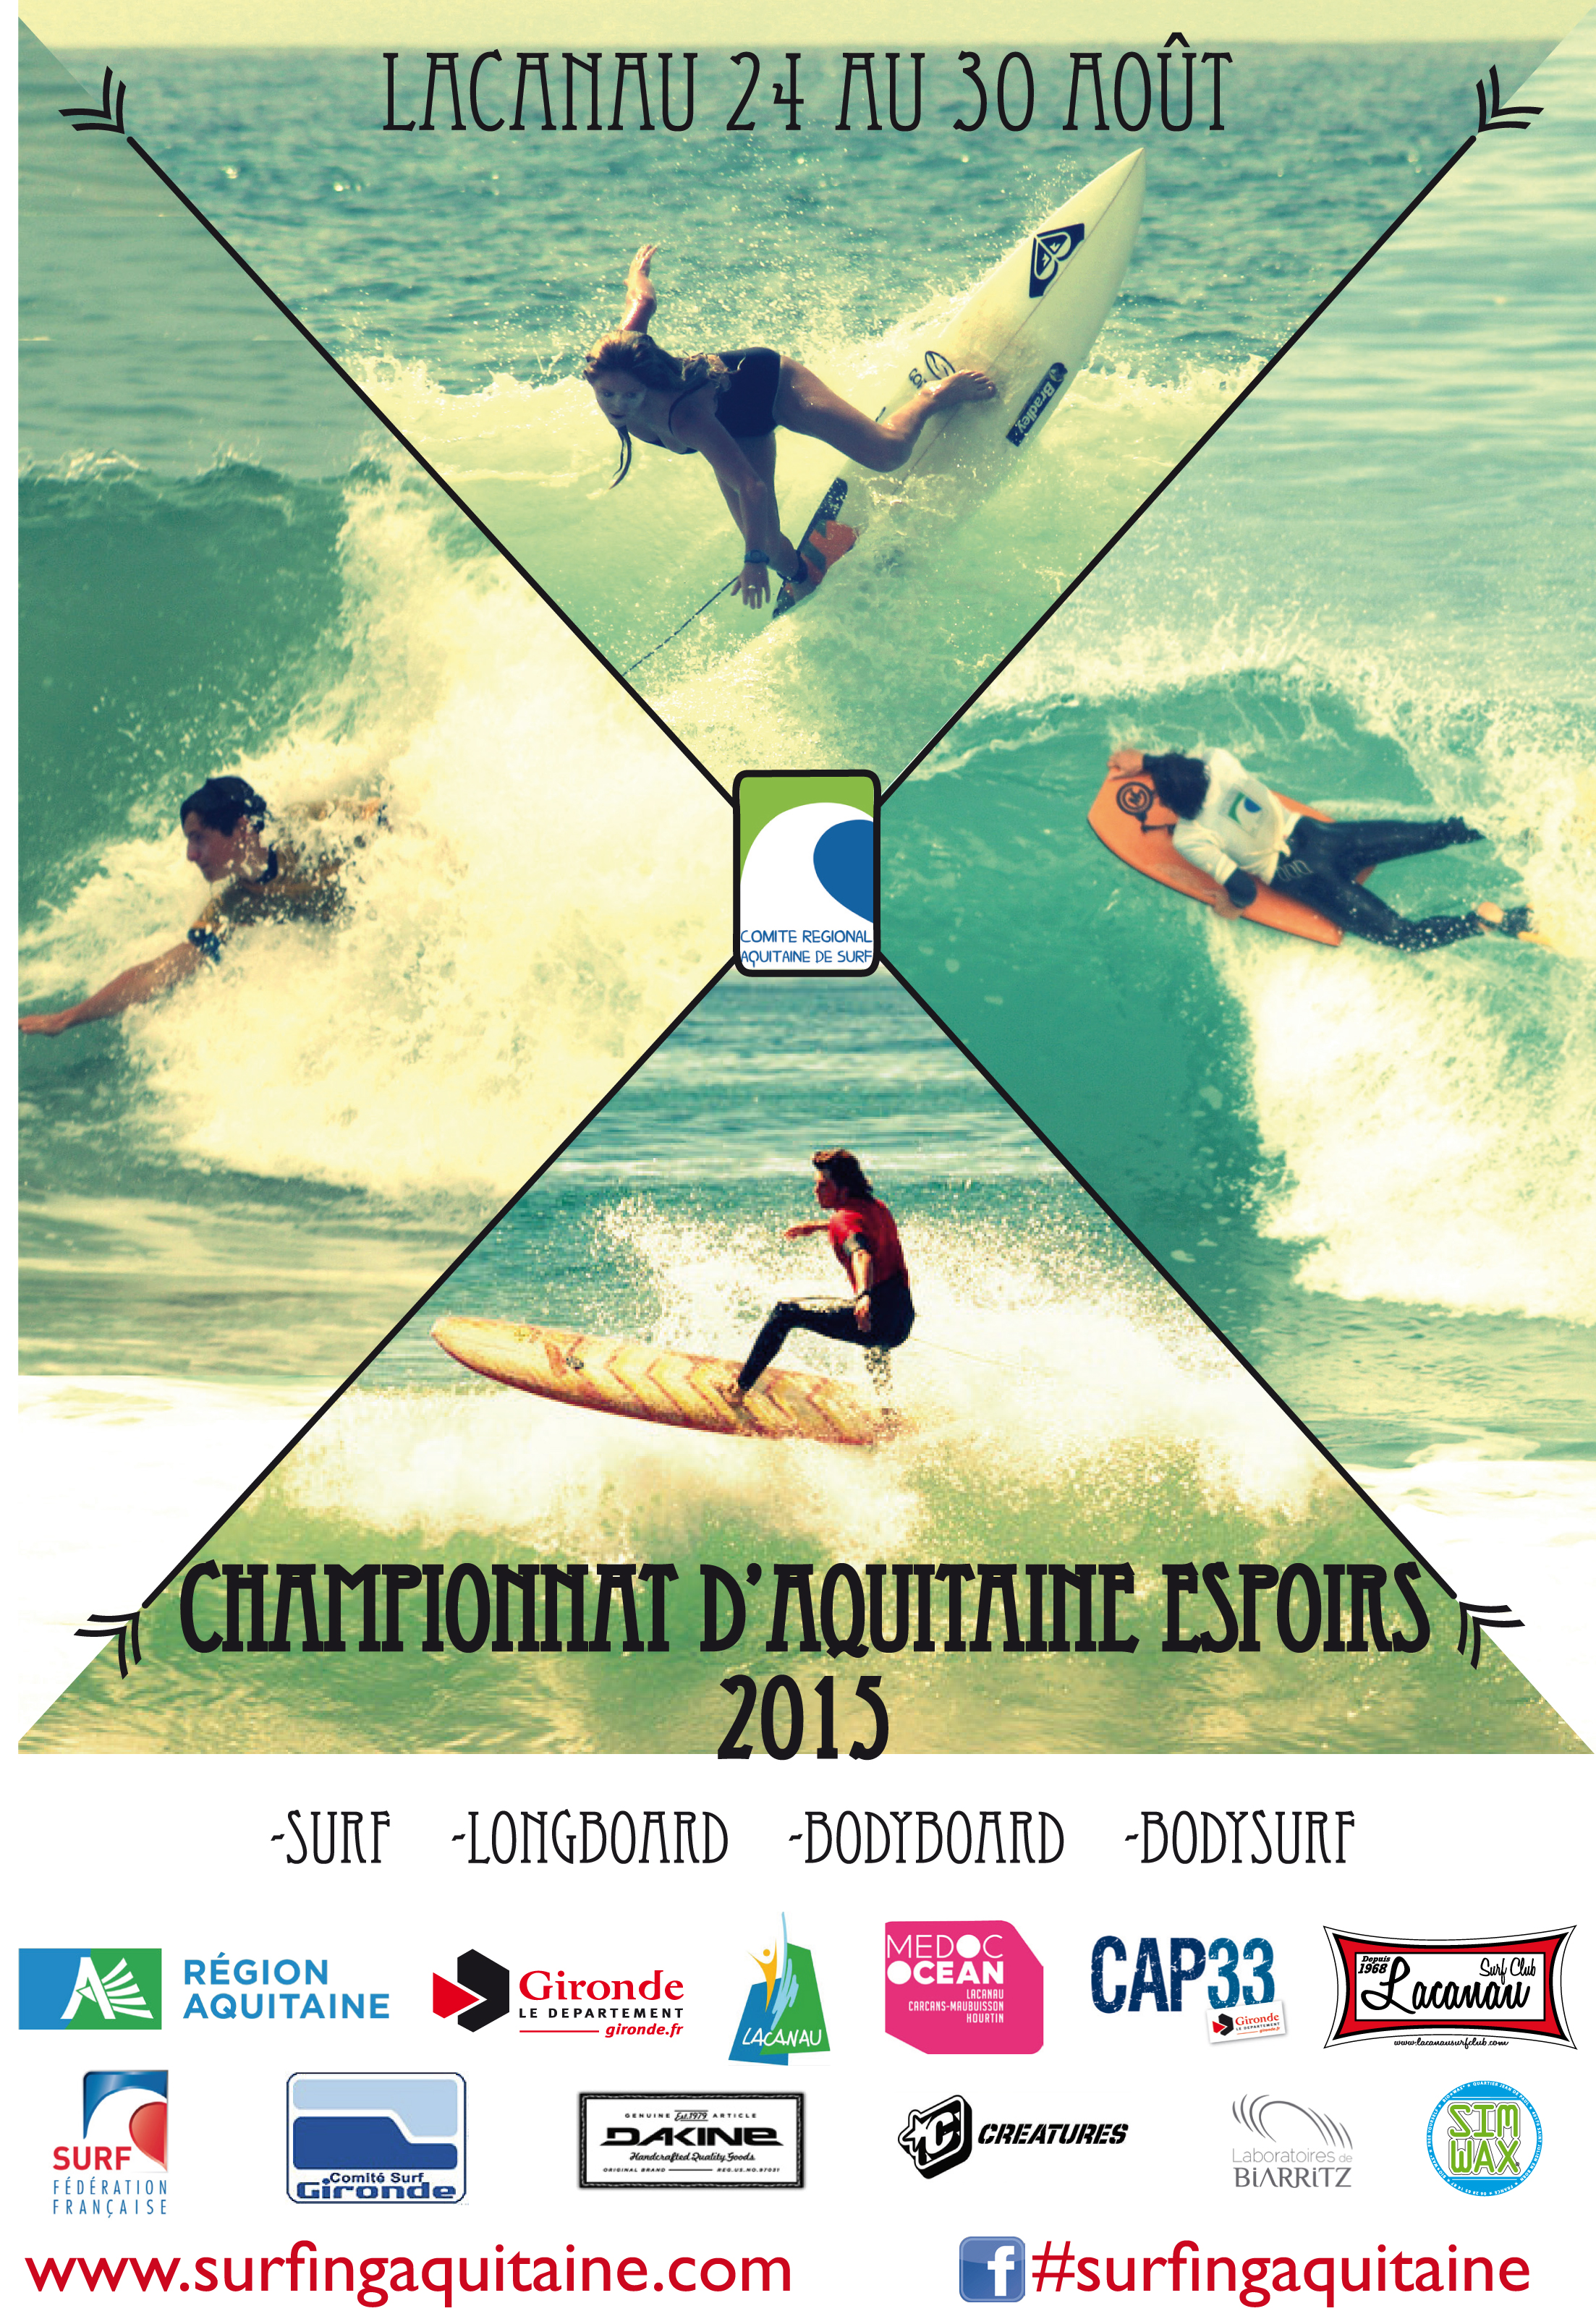 Championnats Aquitaine Espoirs 2015